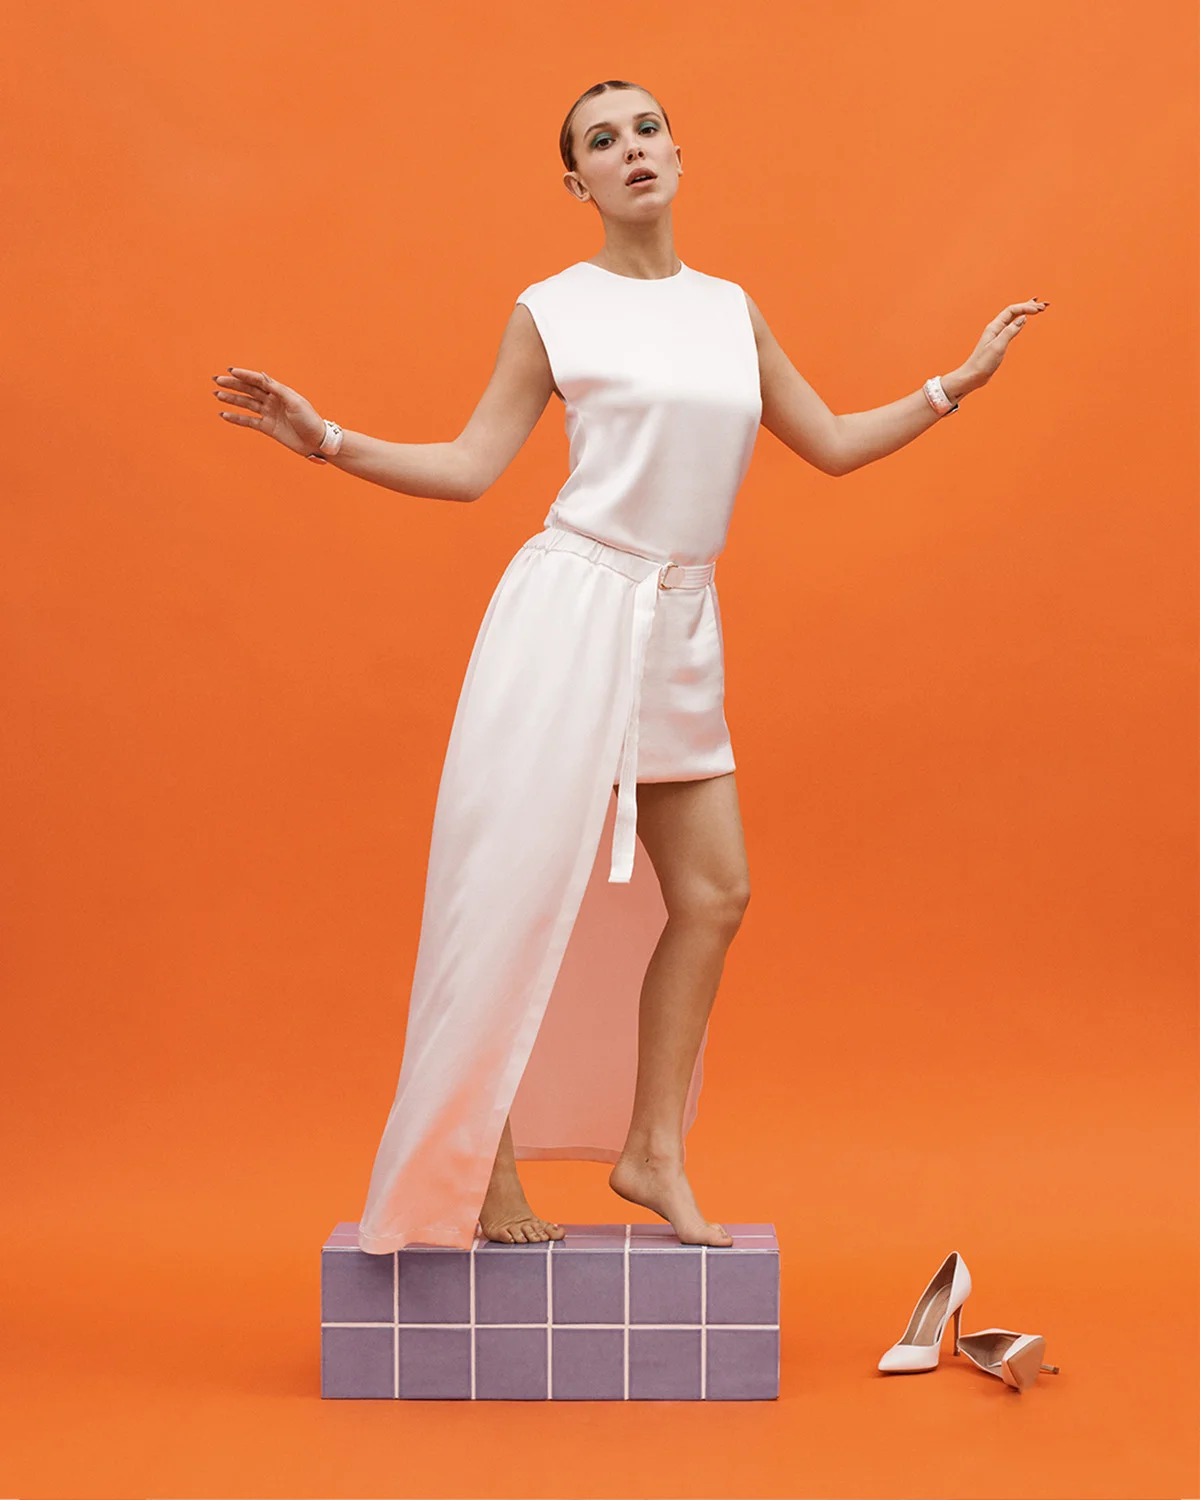 Millie Bobby Brown covers Vogue Hong Kong June 2022 by Paola Kudacki